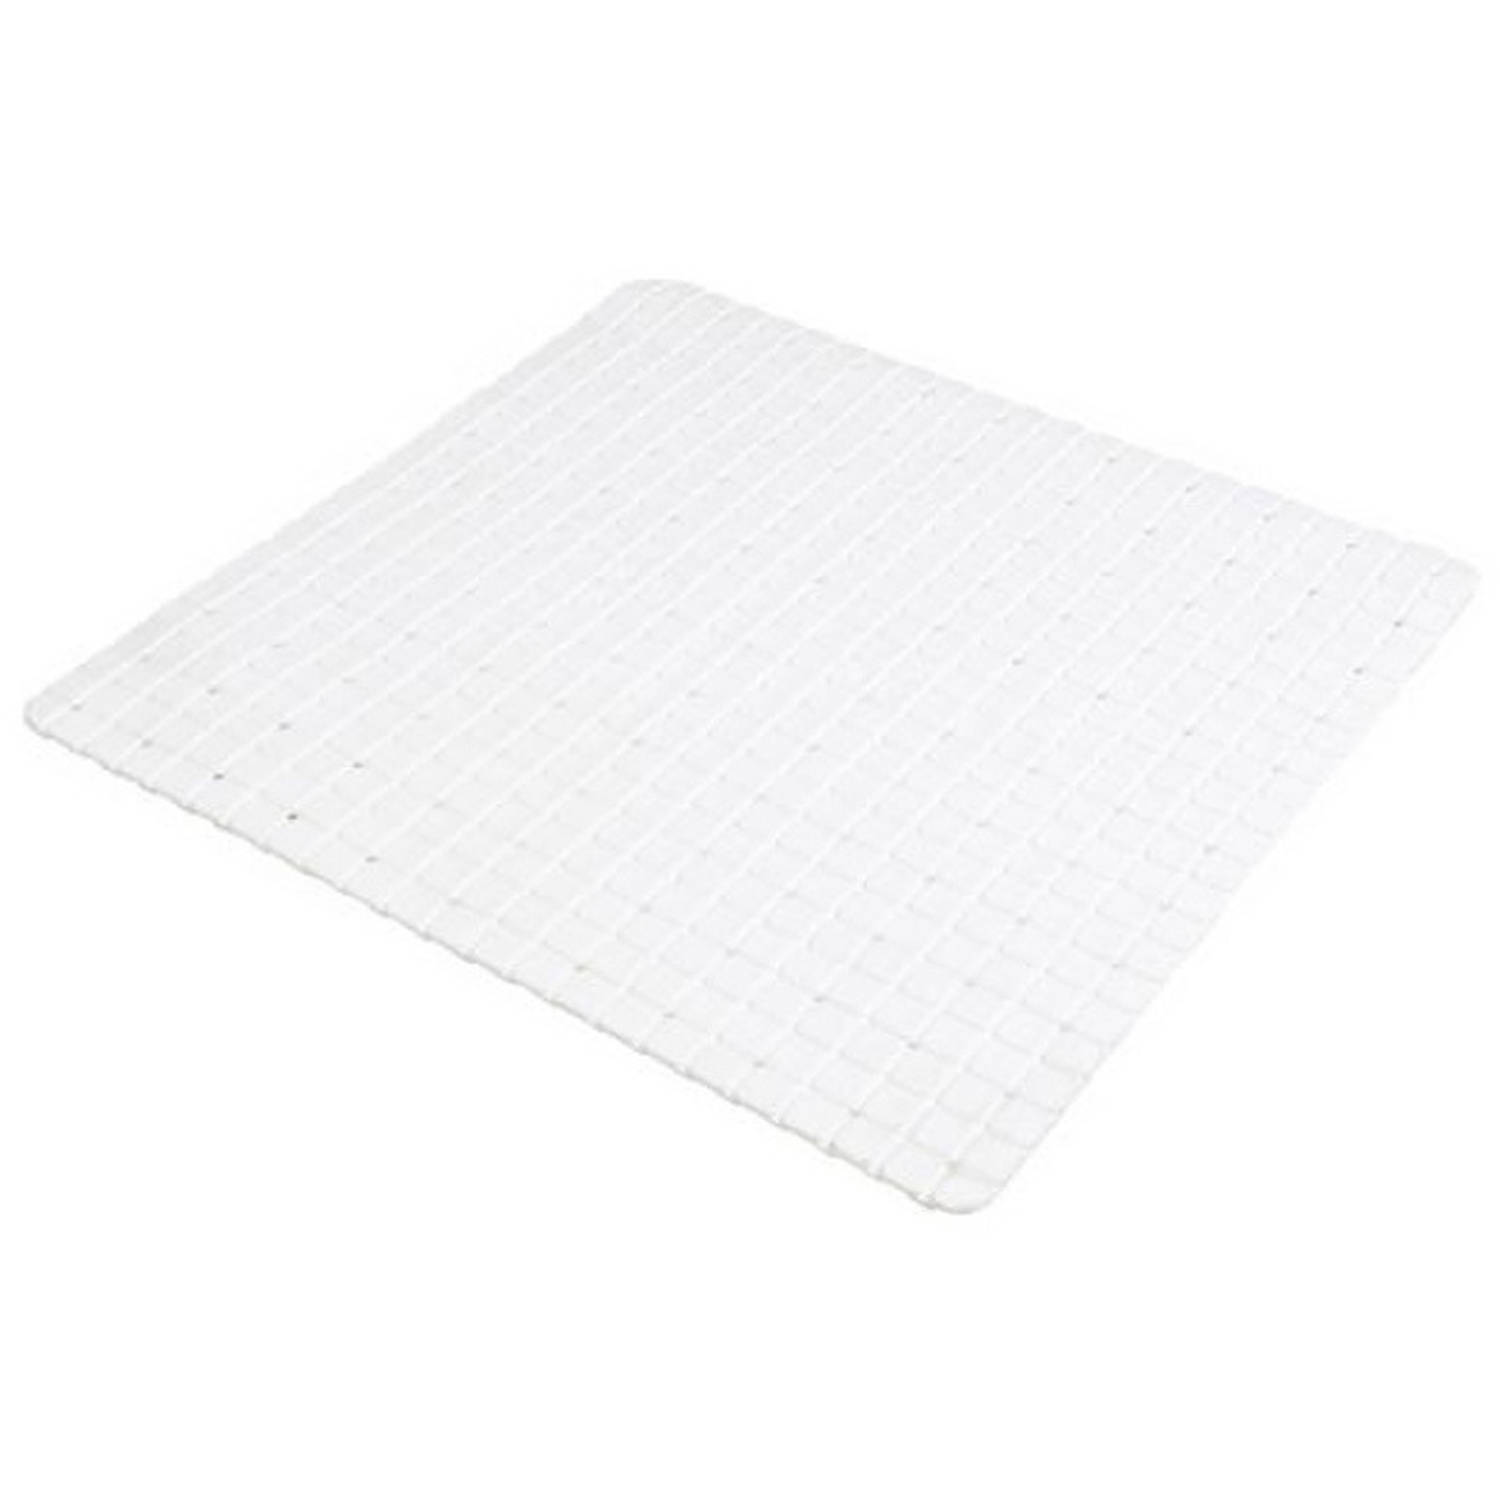 Urban Living Badkamer-douche anti slip mat rubber voor op de vloer parel wit 55 x 55 cm Badmatjes